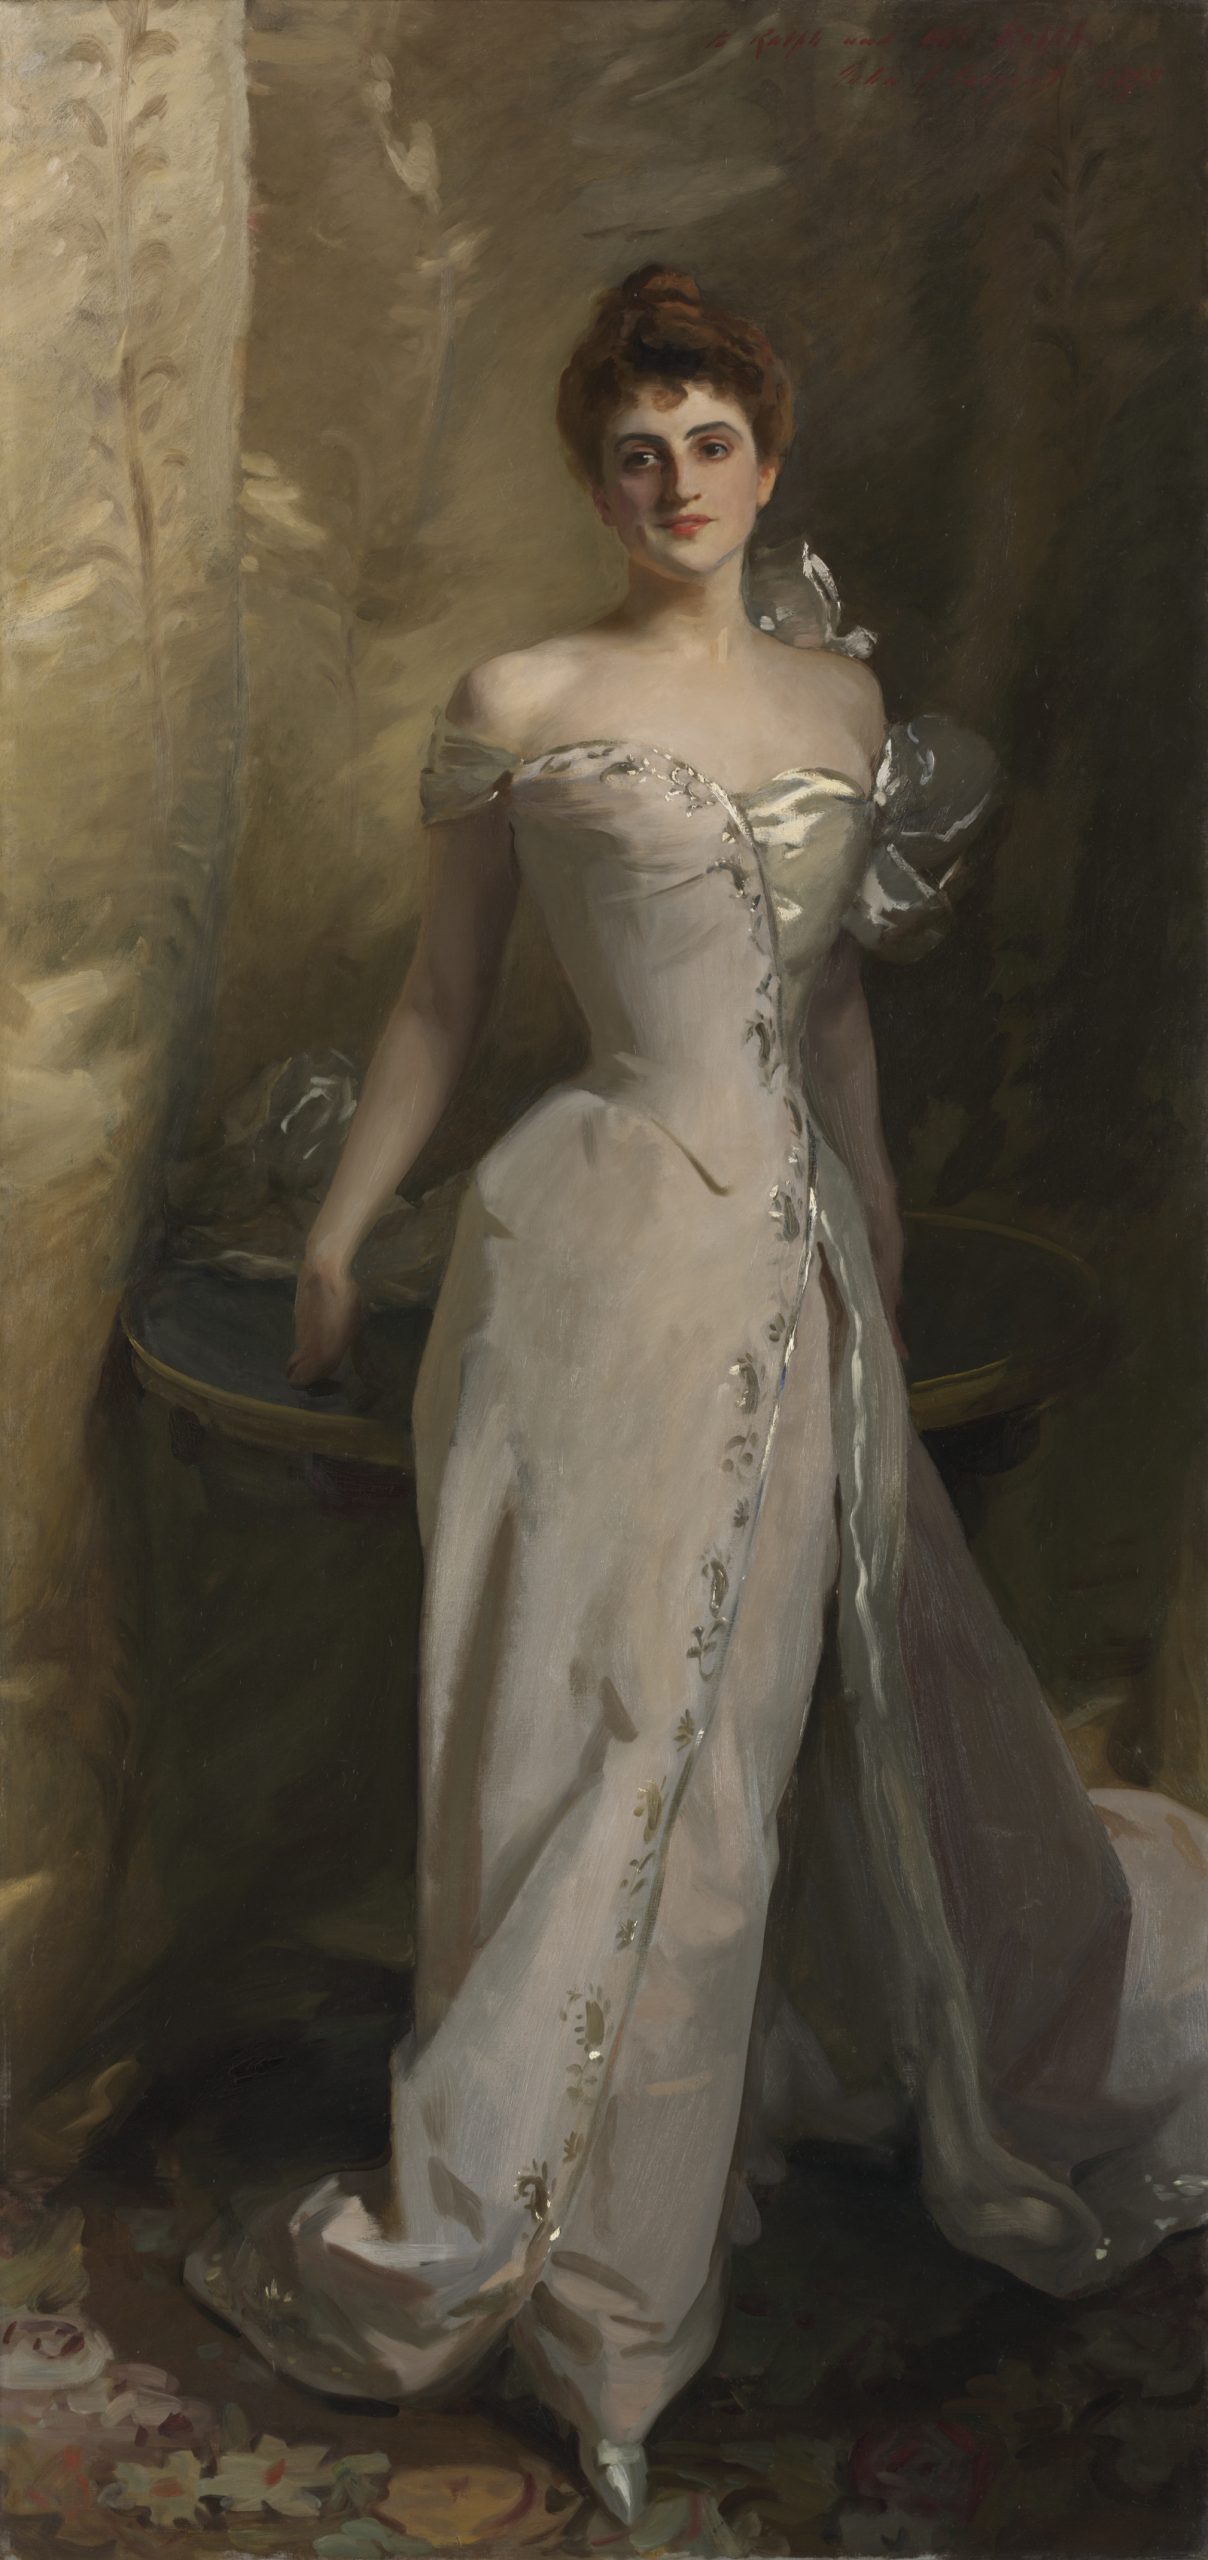 A full-body portrait of a woman in a dress